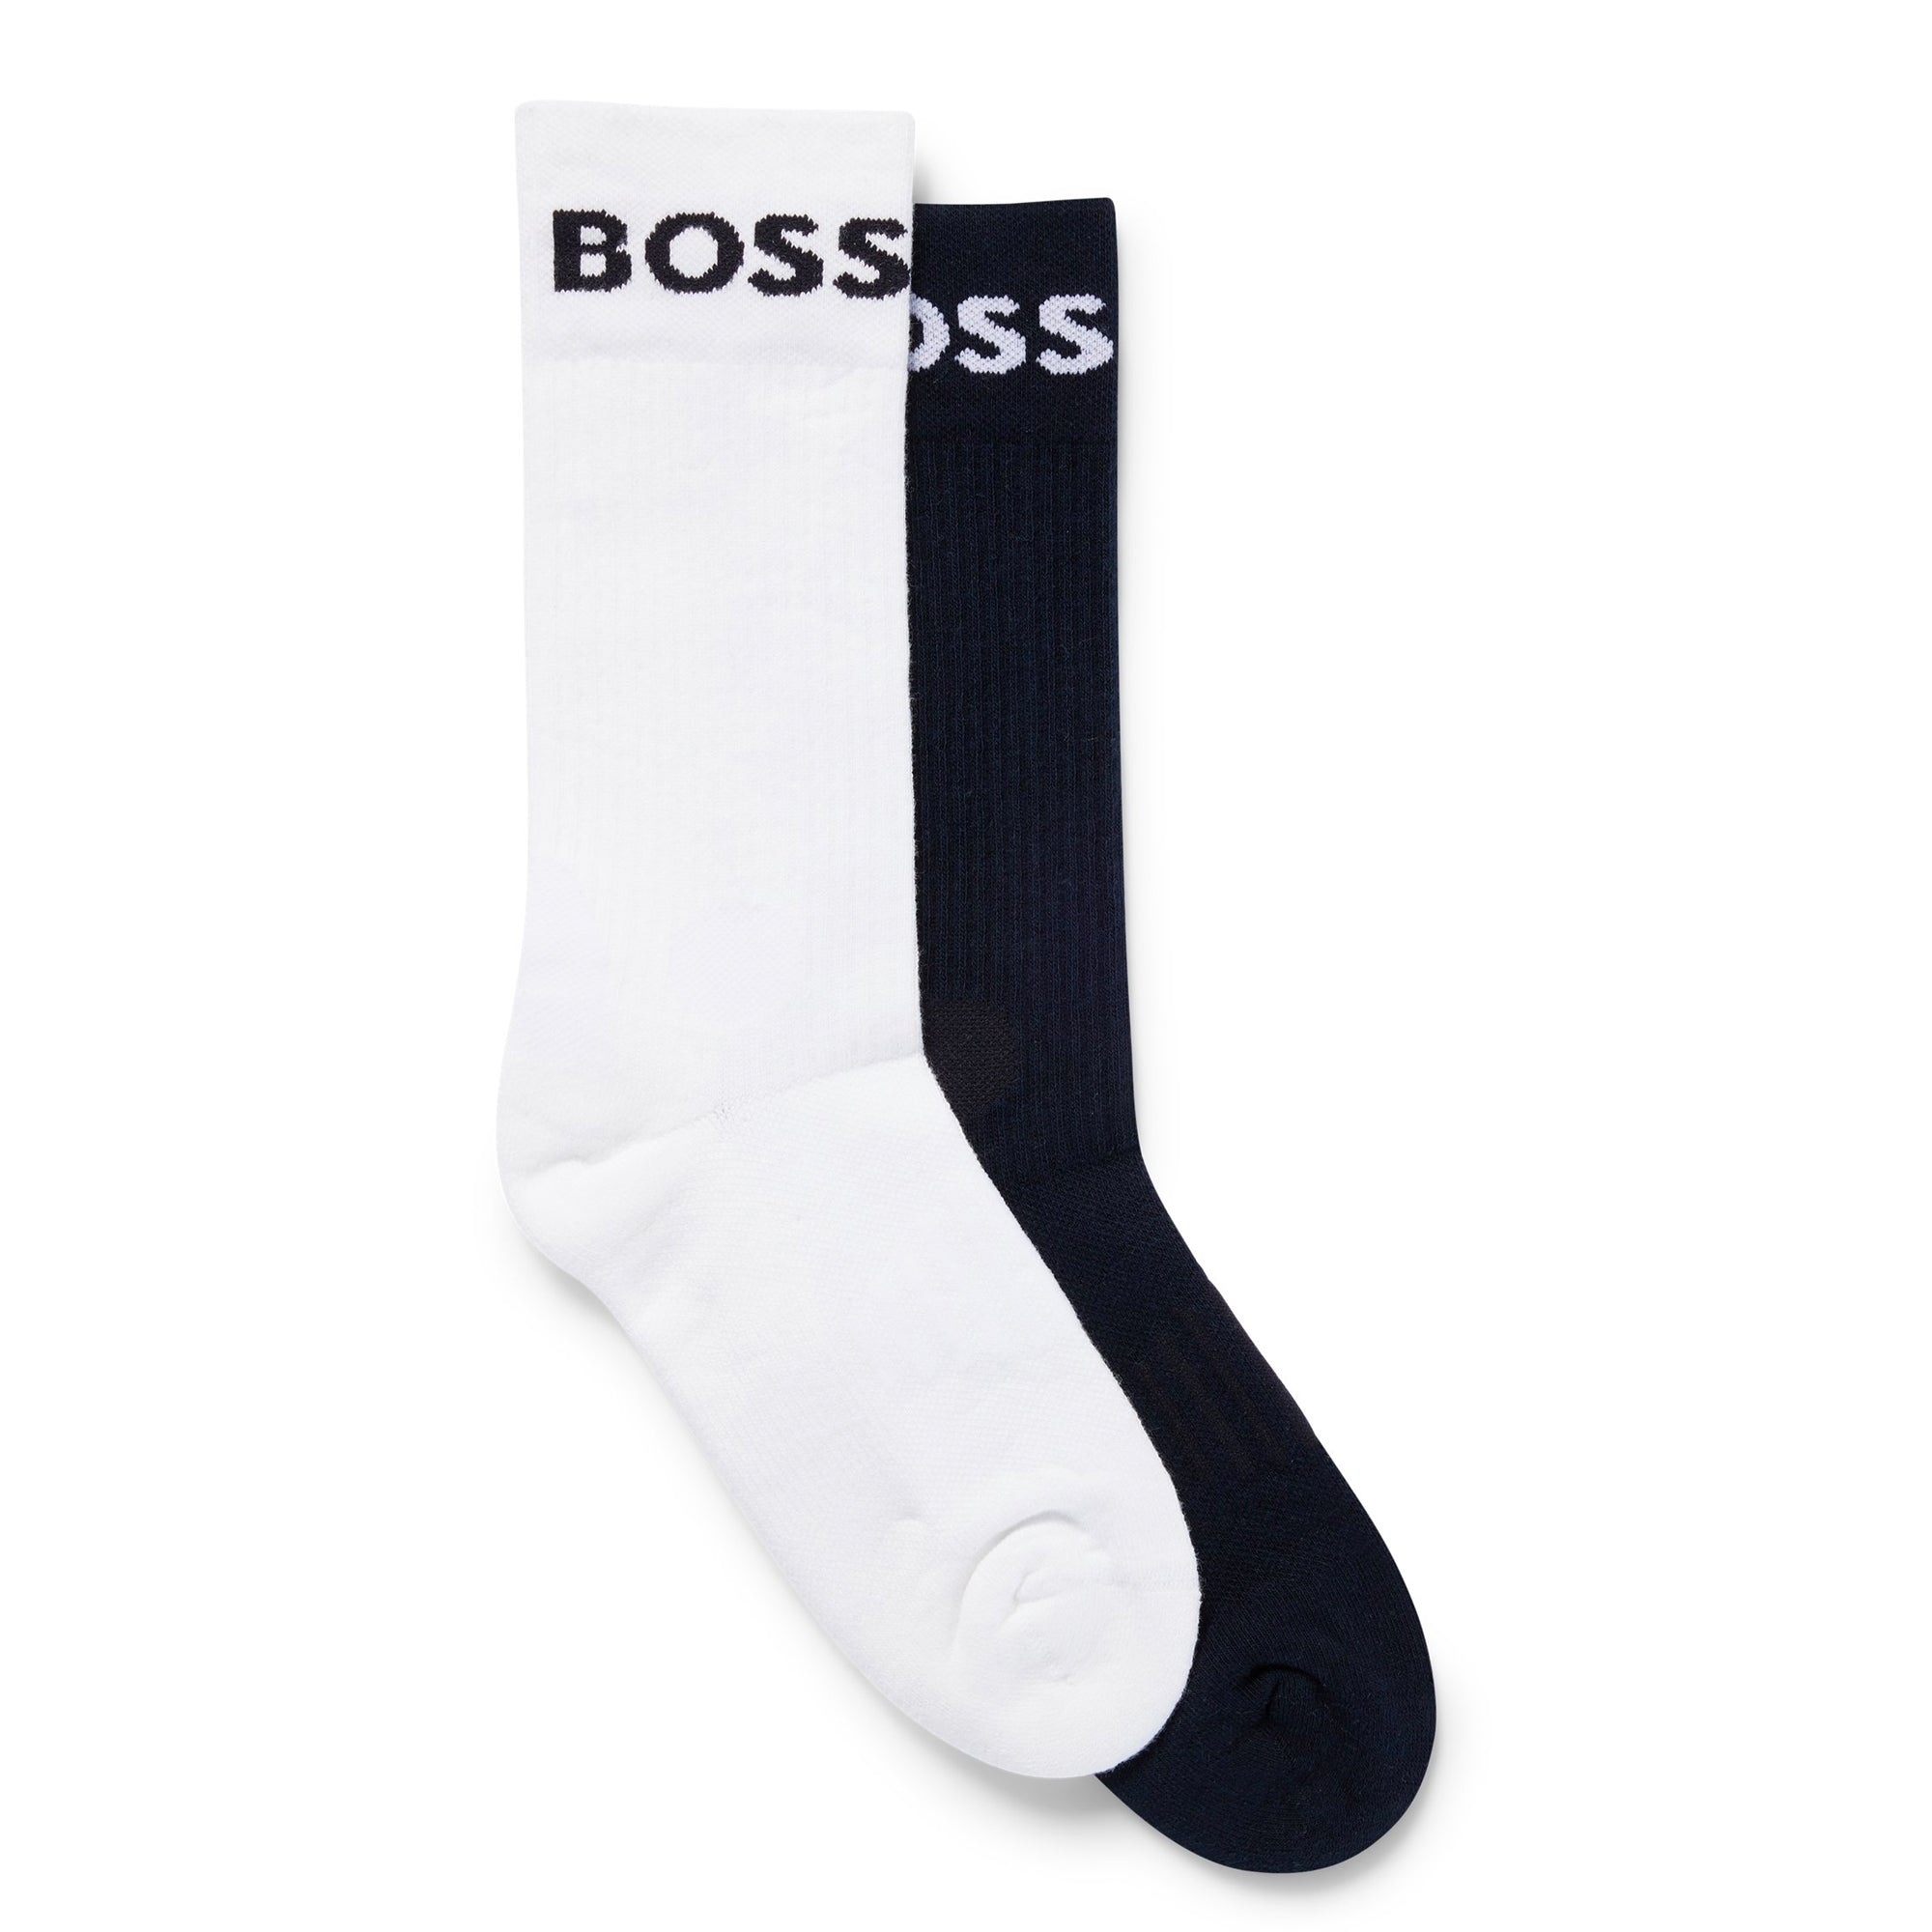 Boss 2 Pack RS Sport Socks - Navy/White